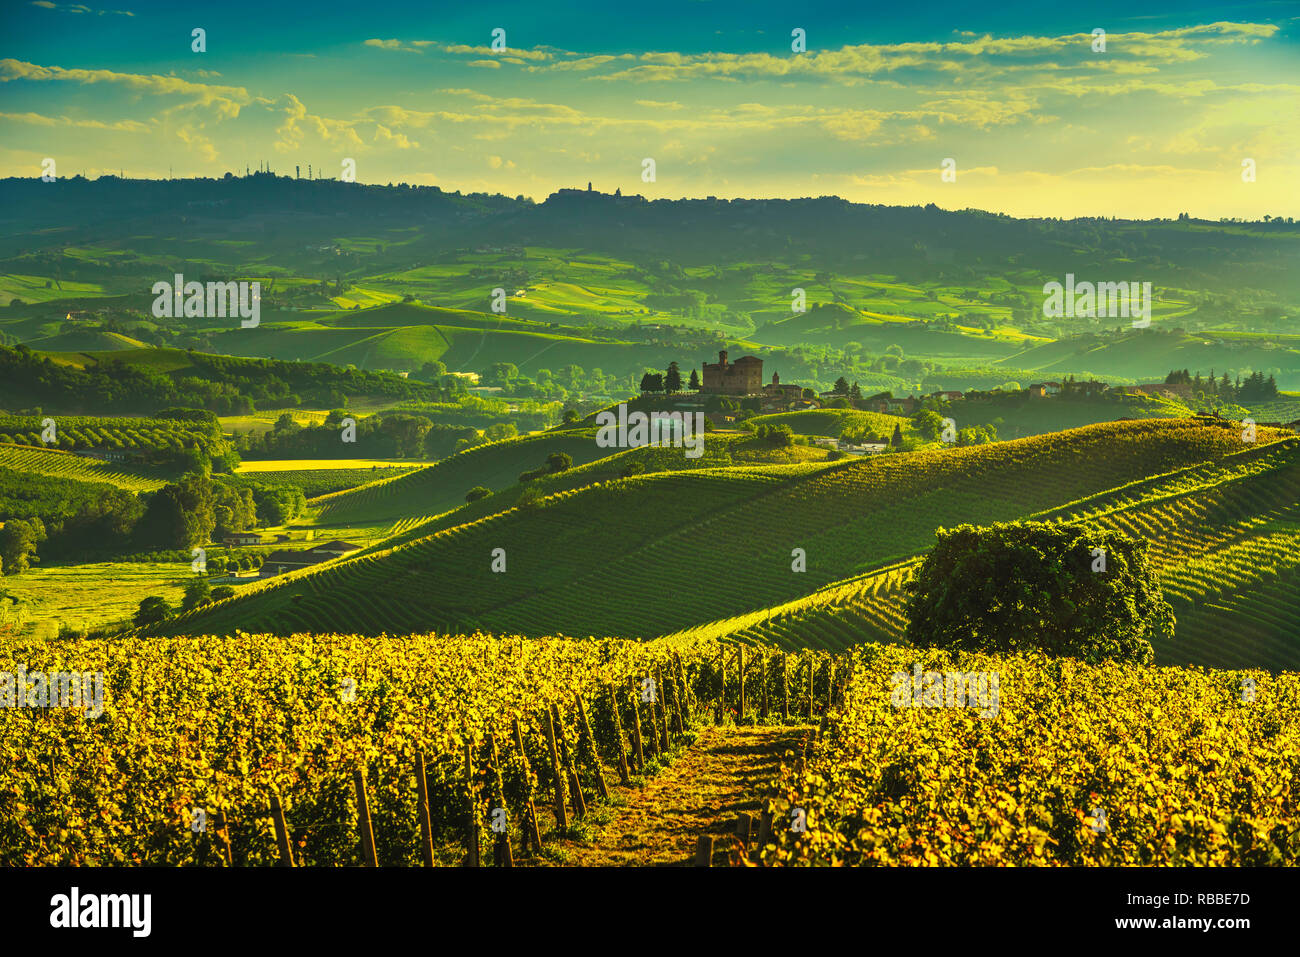 Les vignobles des Langhe sunset panorama, Grinzane Cavour et La Marra, Site de l'Unesco, Piémont, Italie du nord de l'Europe. Banque D'Images